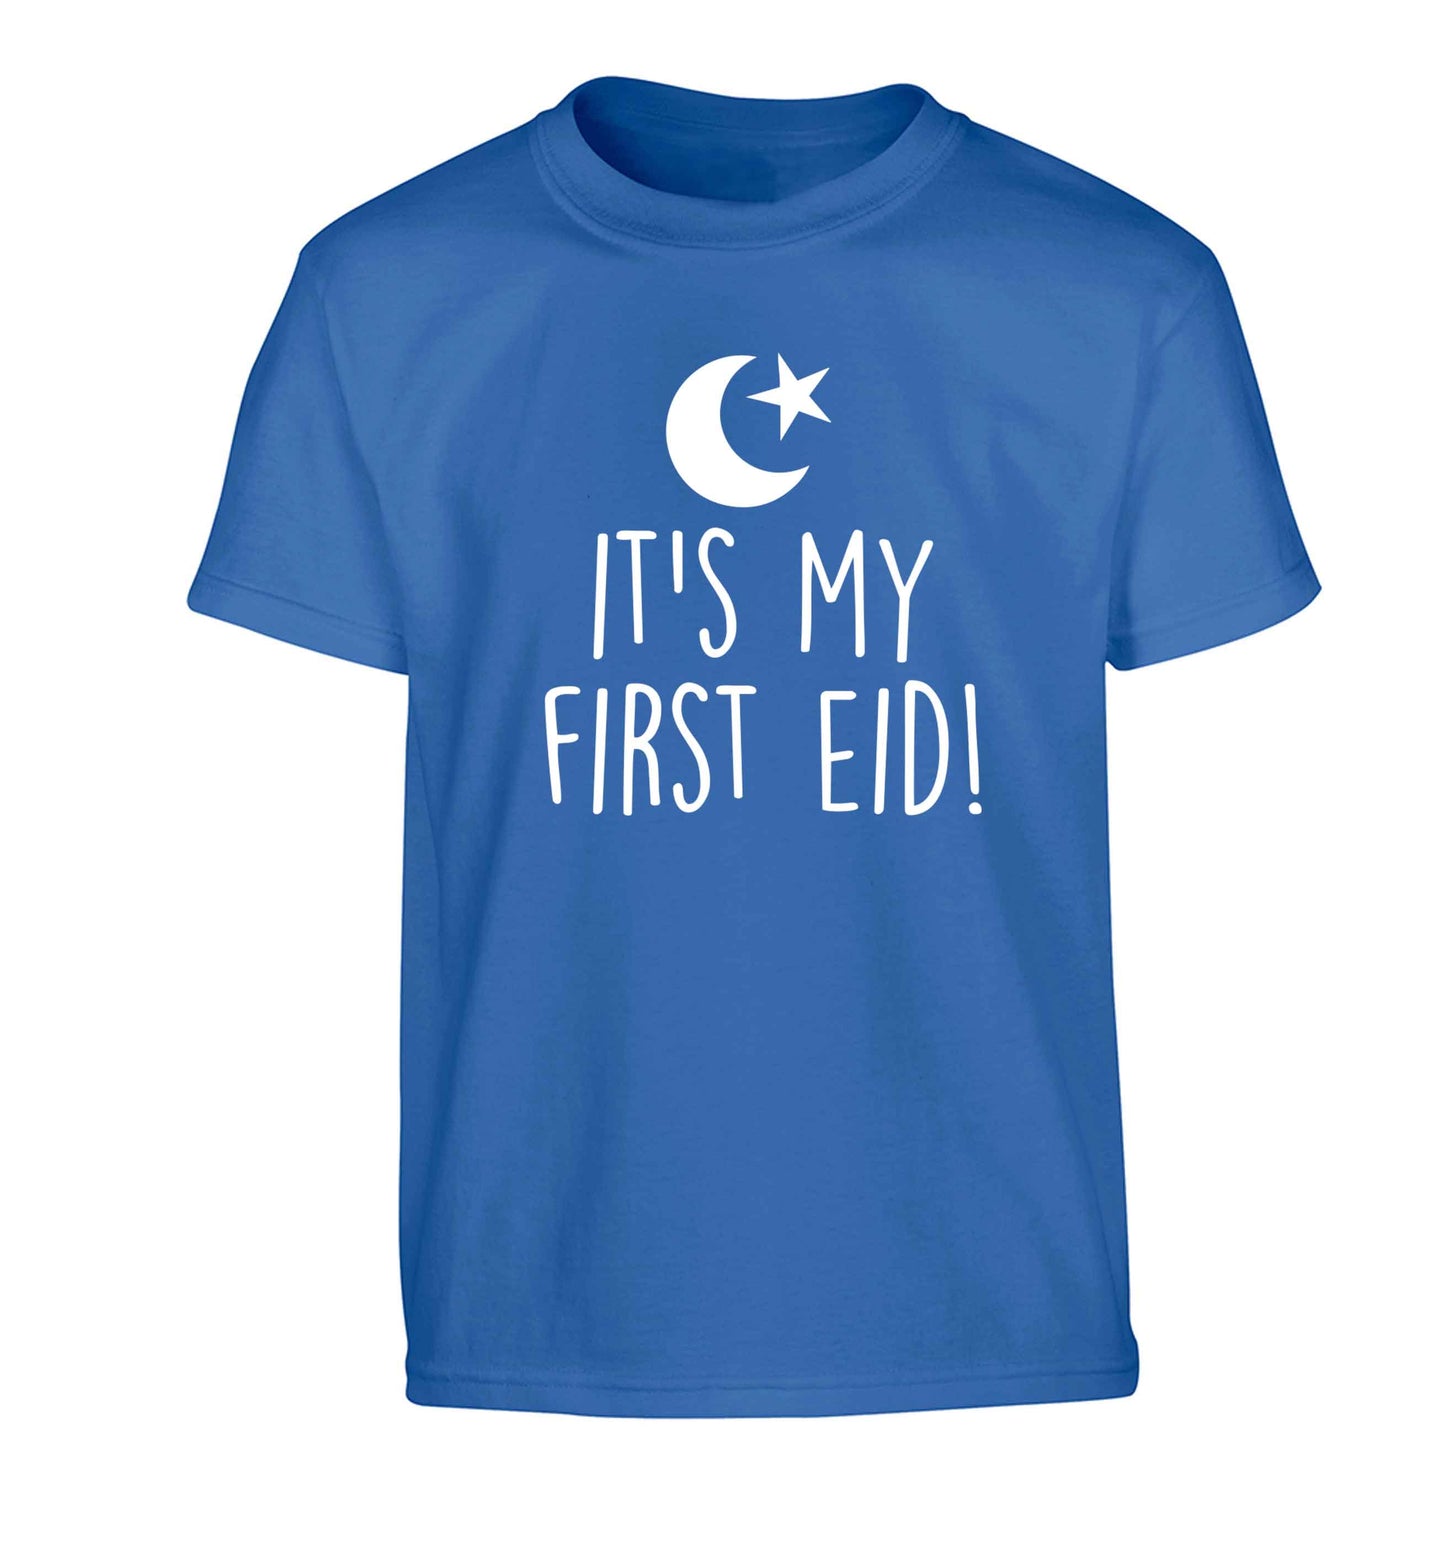 It's my first Eid Children's blue Tshirt 12-13 Years